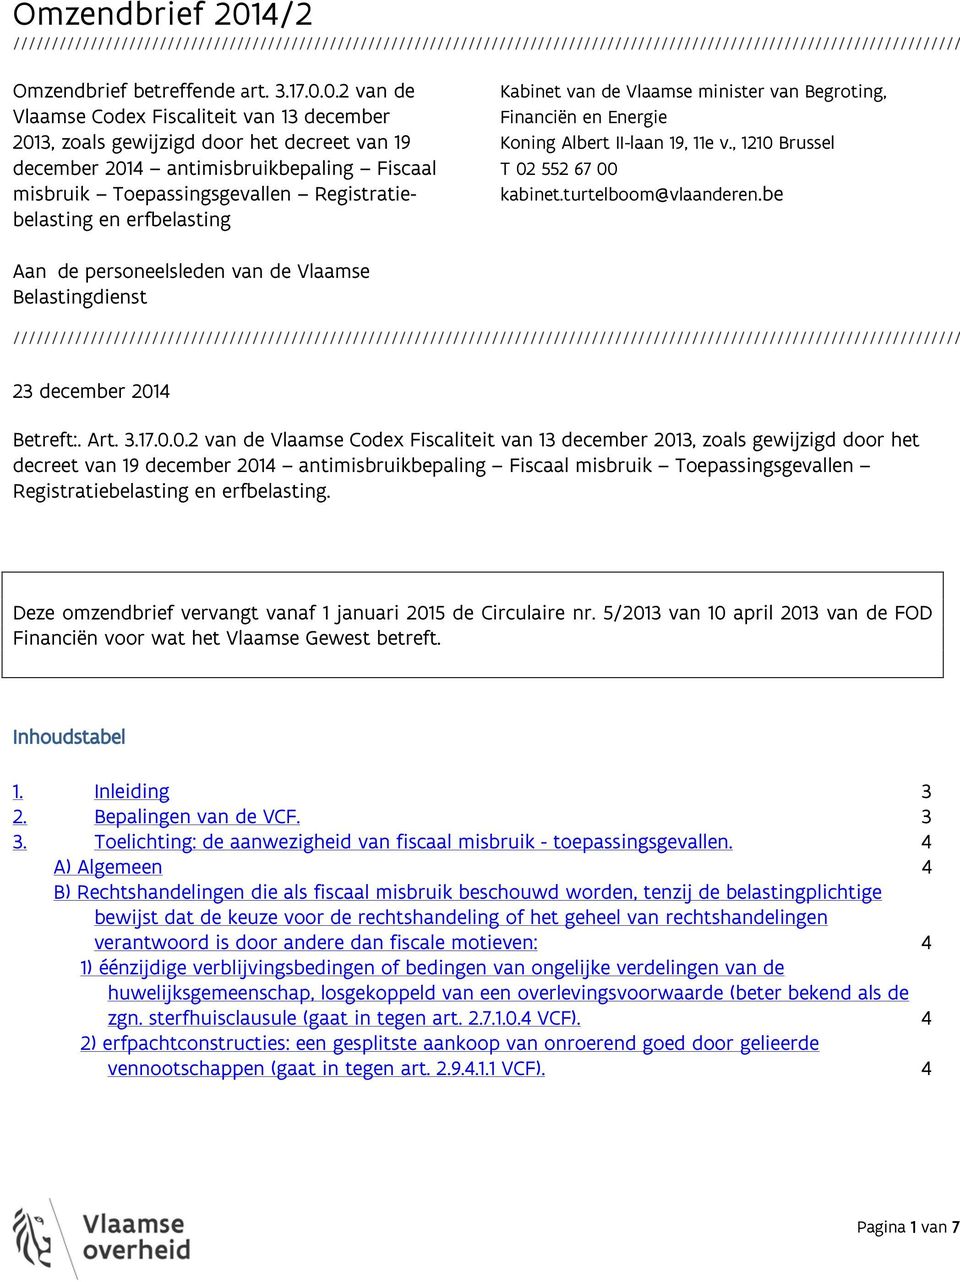 0.2 van de Vlaamse Codex Fiscaliteit van 13 december 2013, zoals gewijzigd door het decreet van 19 december 2014 antimisbruikbepaling Fiscaal misbruik Toepassingsgevallen Registratiebelasting en